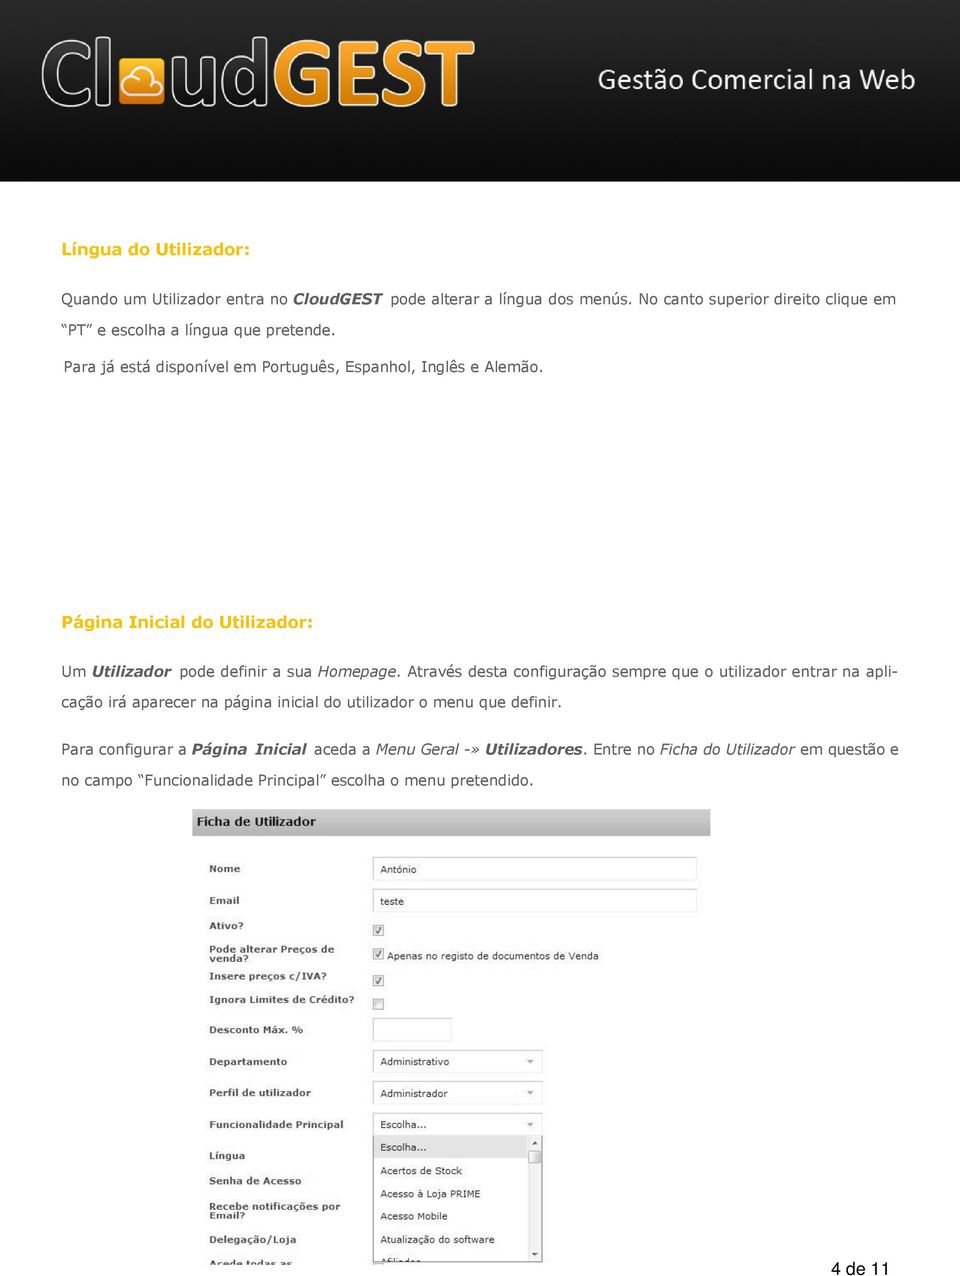 Página Inicial do Utilizador: Um Utilizador pode definir a sua Homepage.